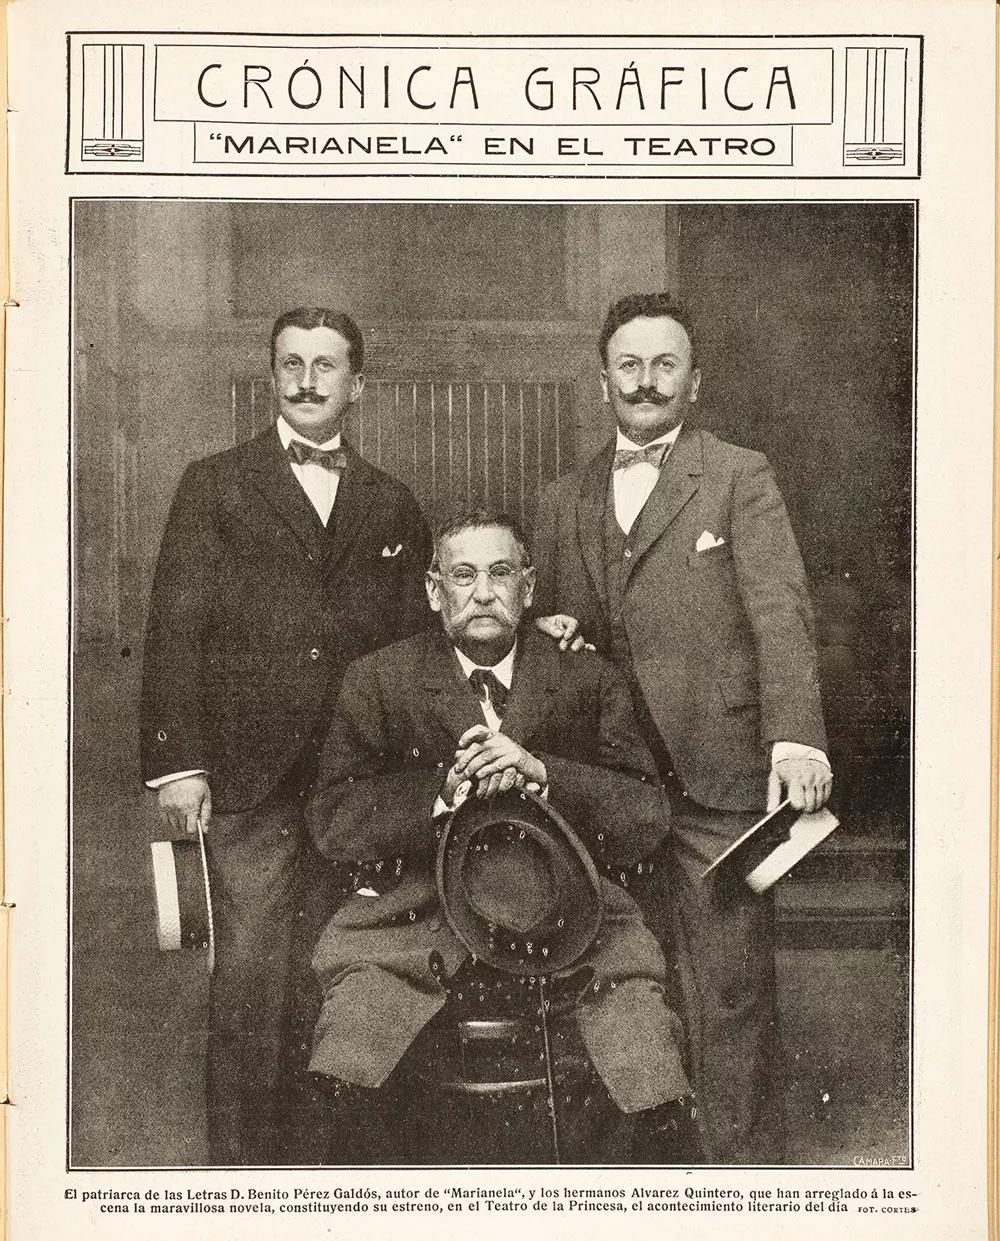 Galdós con los hermanos Álvarez Quintero, con ocasión del estreno en teatro de Marianela.